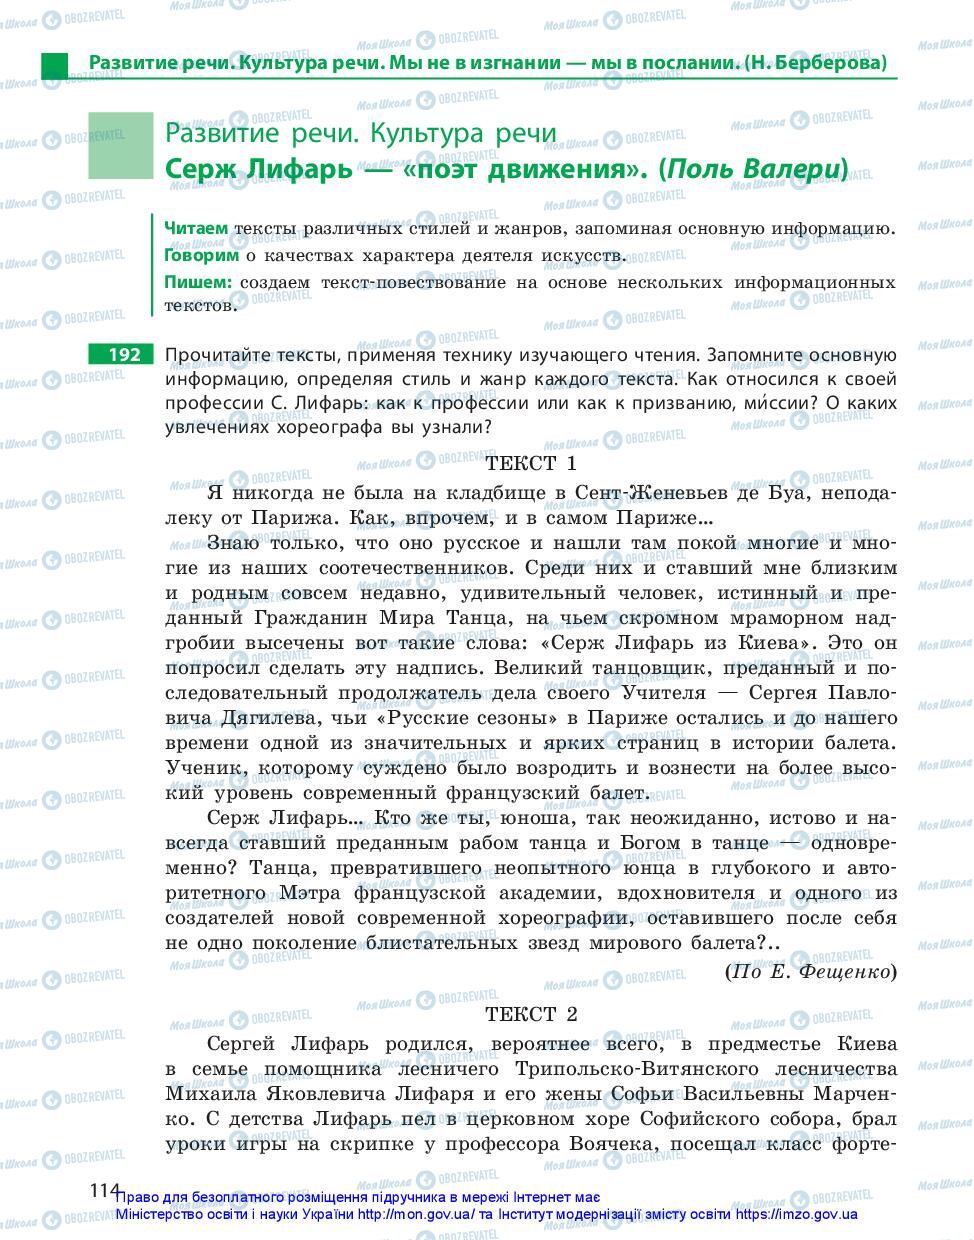 Підручники Російська мова 11 клас сторінка 114